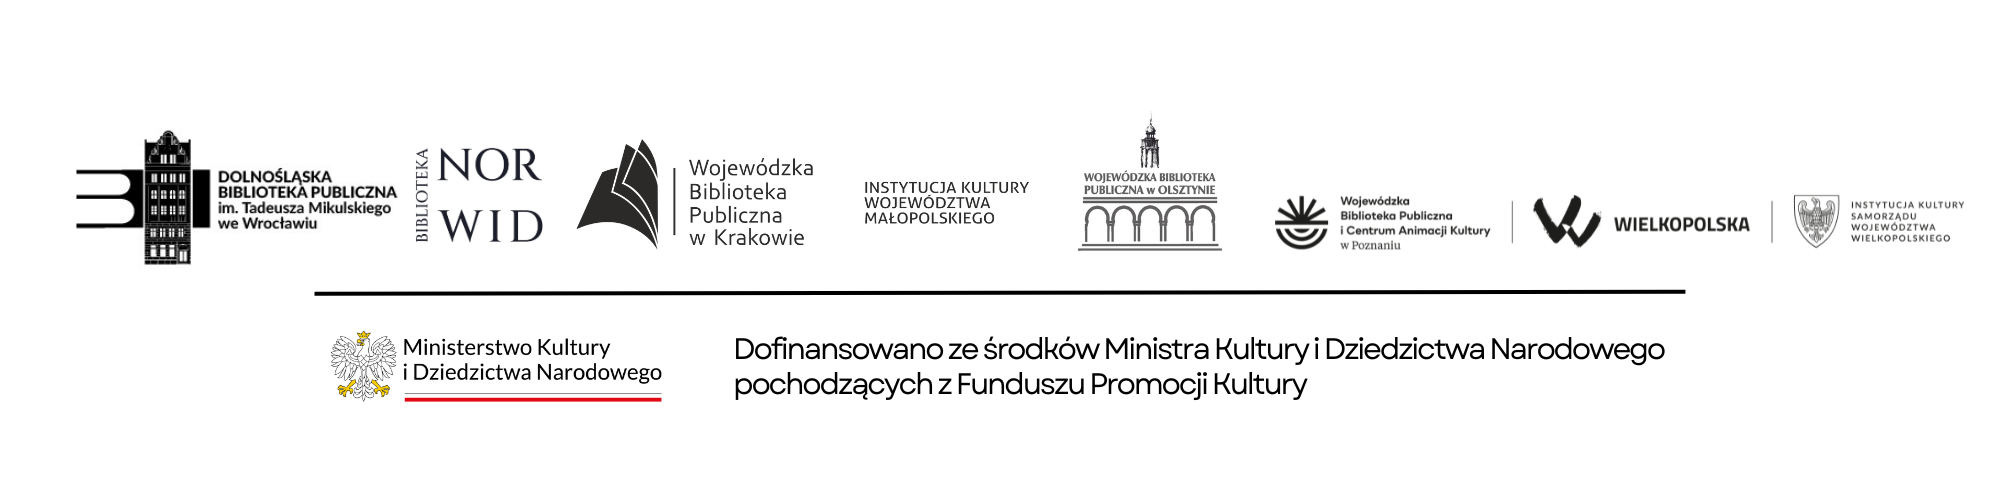 to są znaki czyli logotypy bibliotek i ministerstwa kultury i dziedzictwa narodowego